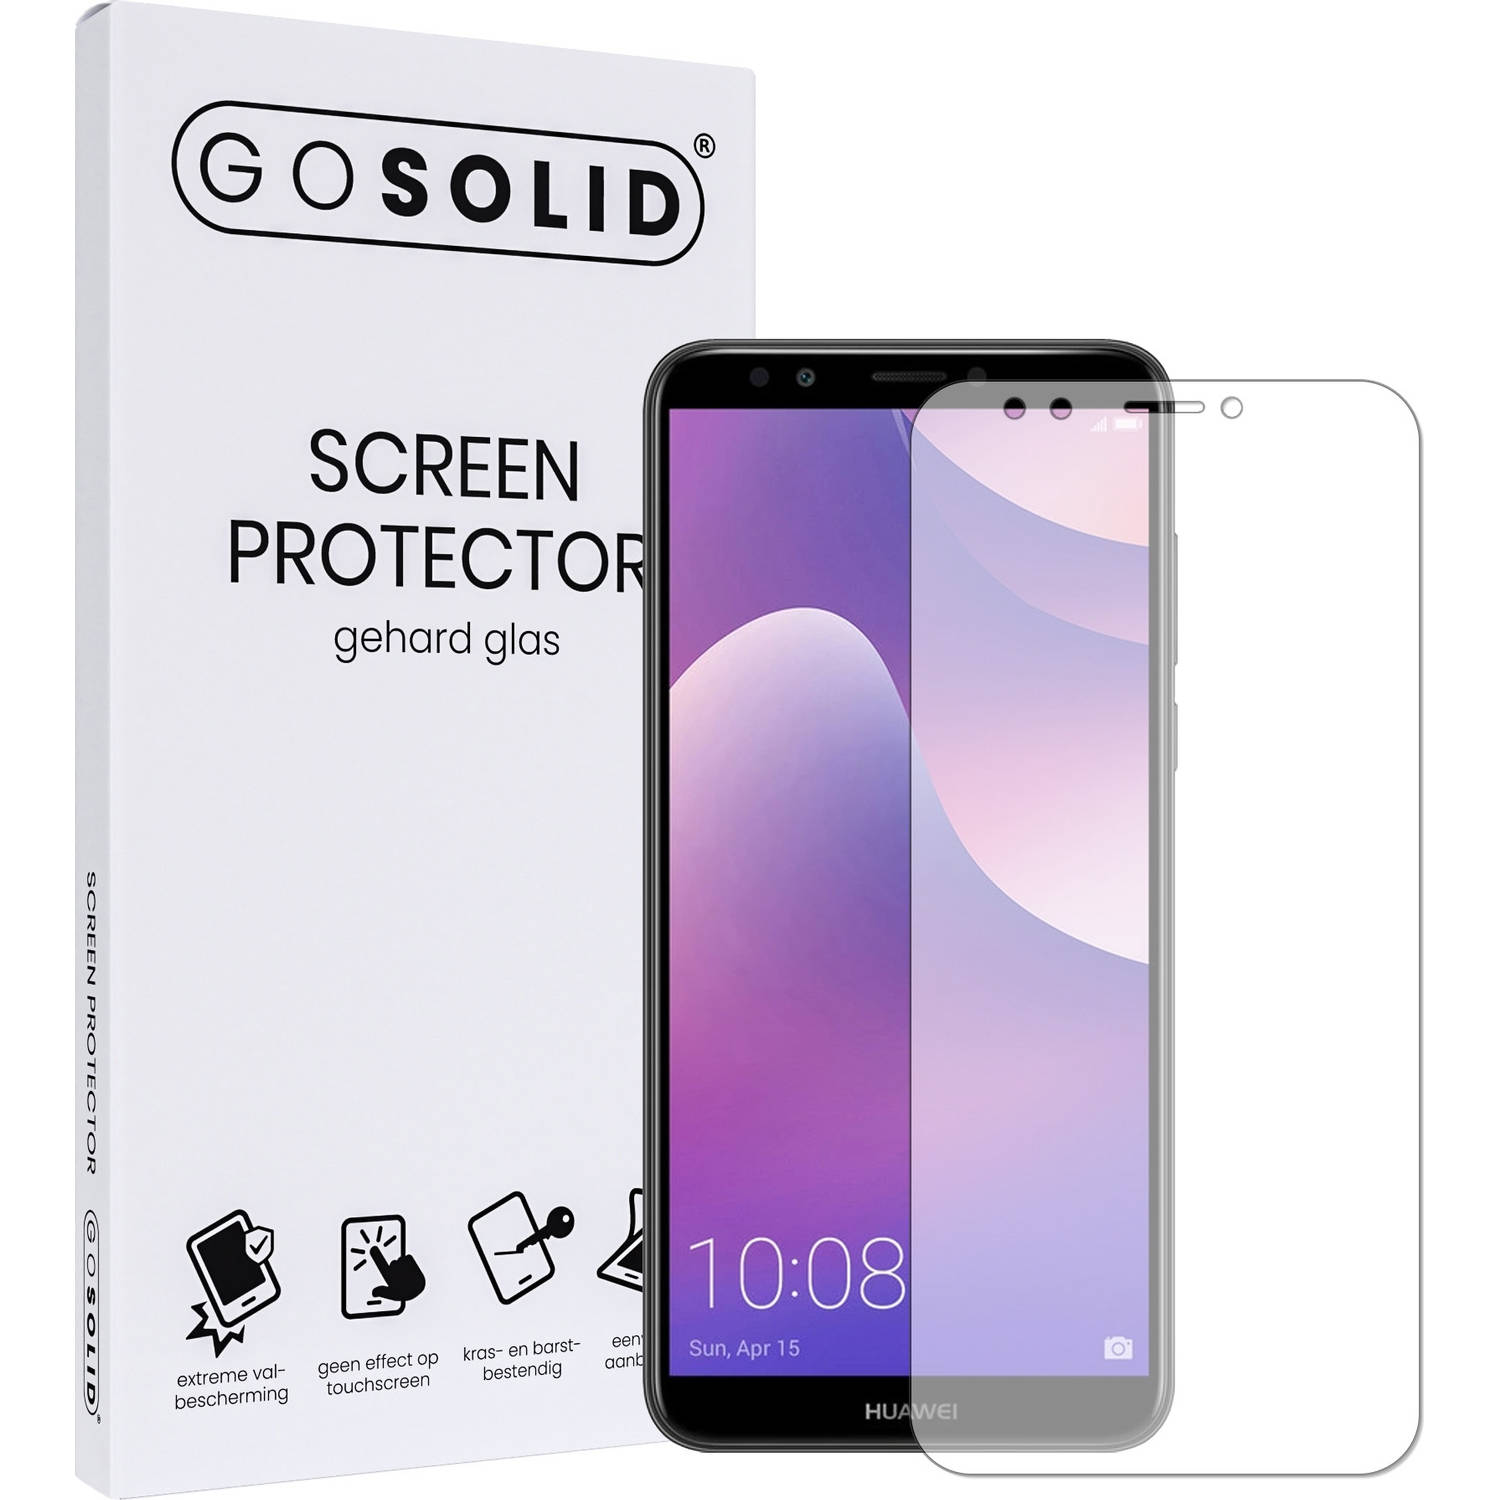 GO SOLID! ® Huawei Y7 (2018) screenprotector - gehard glas